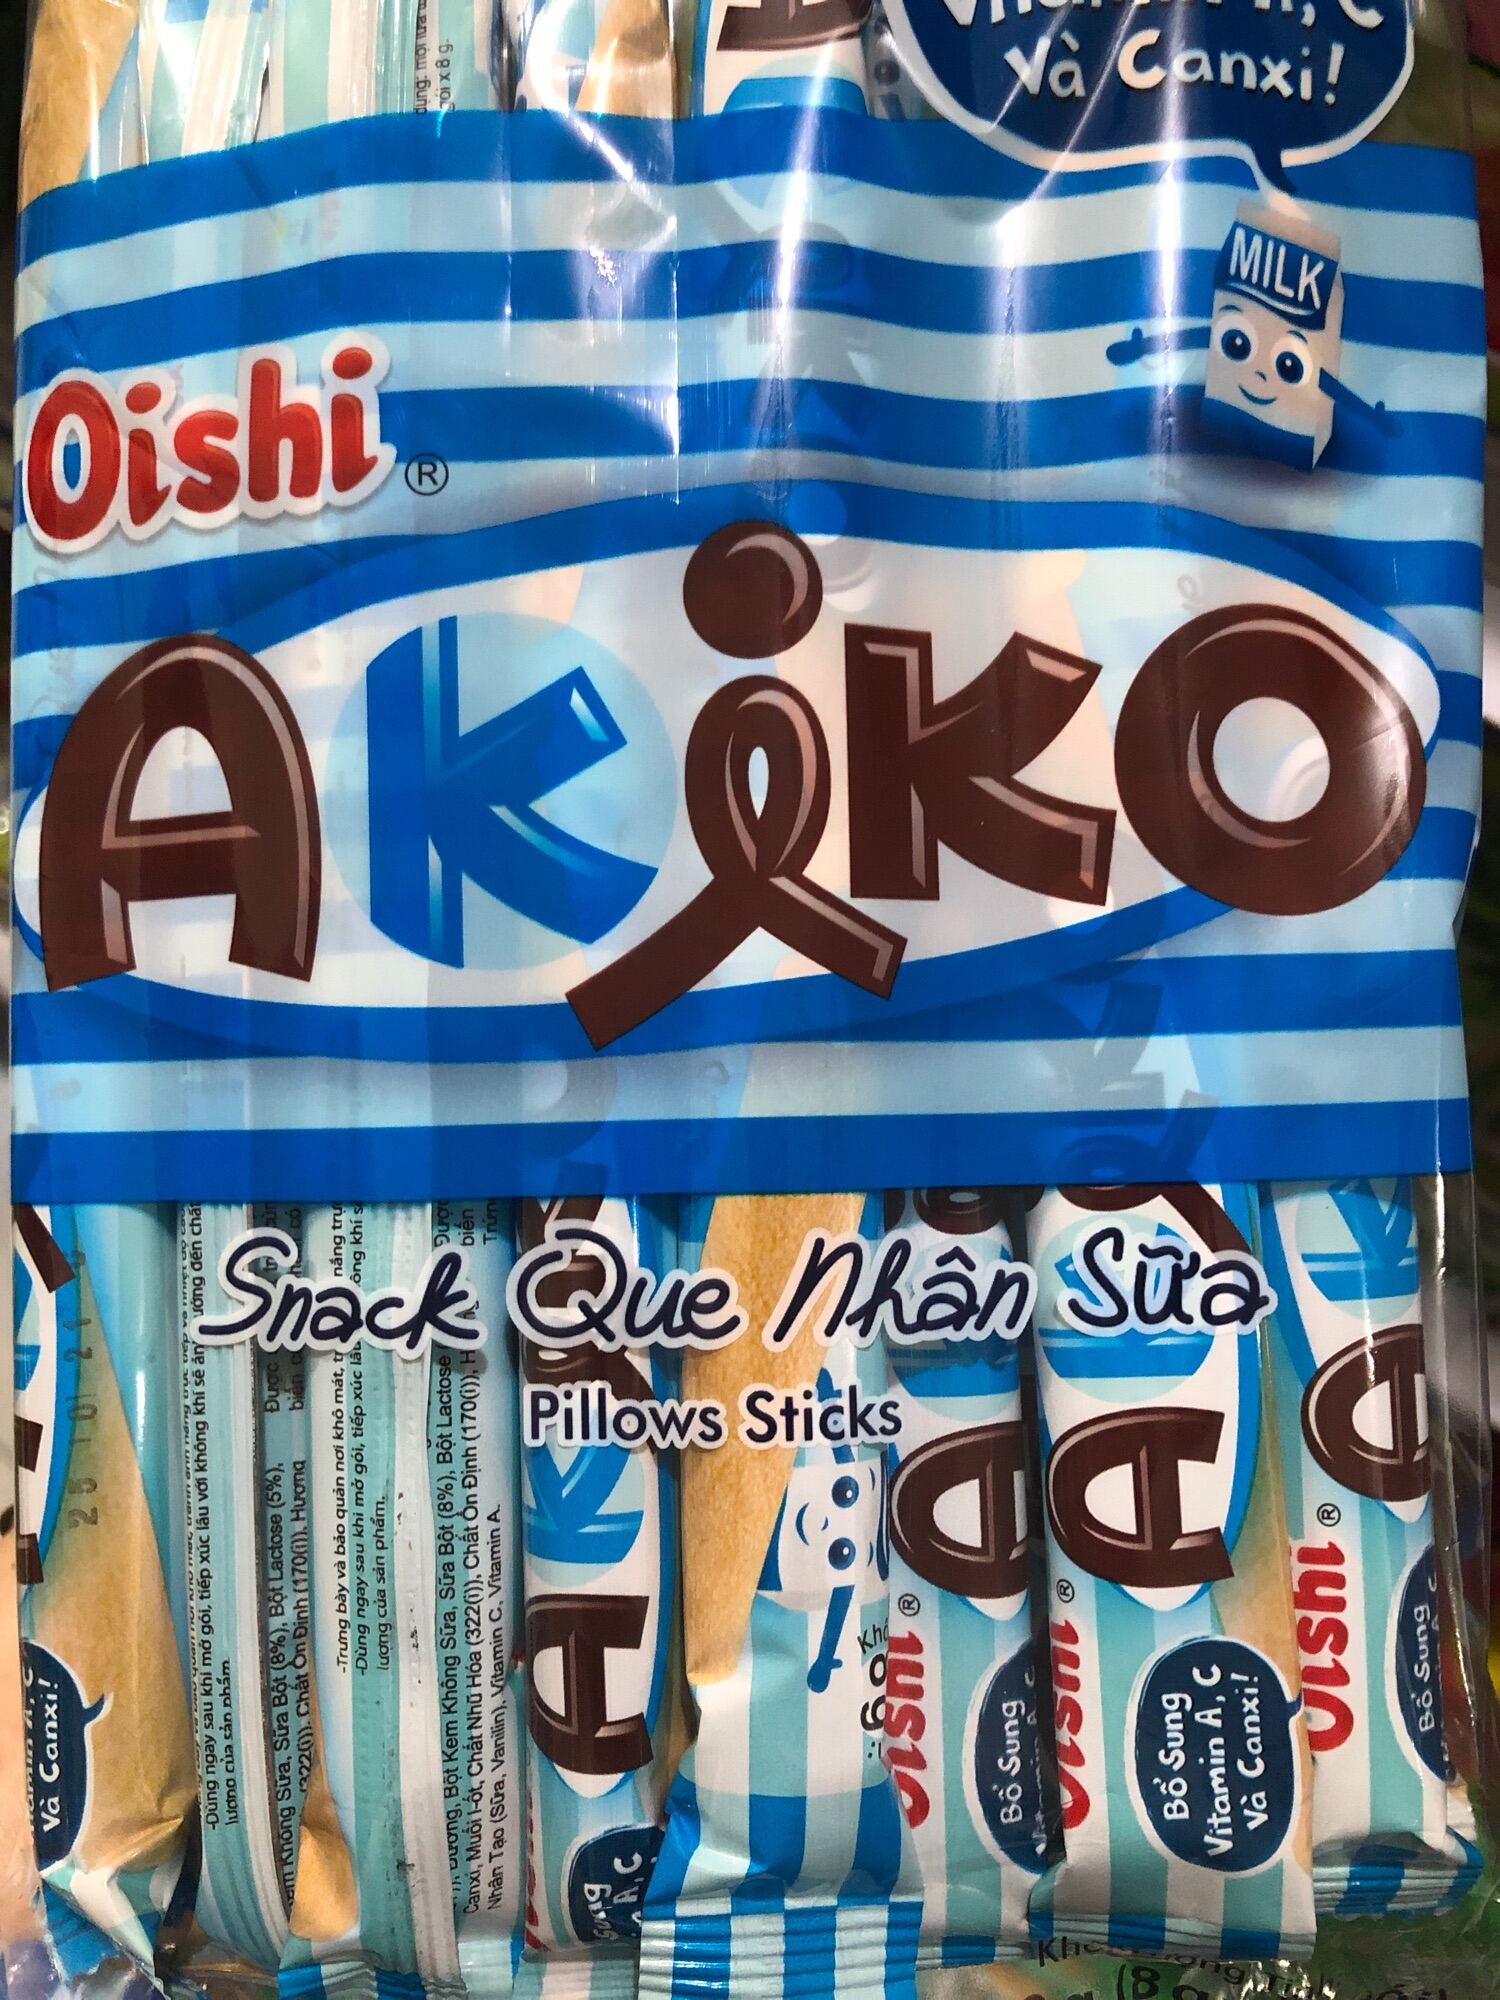 Bánh Snack Que Nhân Sữa Oishi Akiko 160g